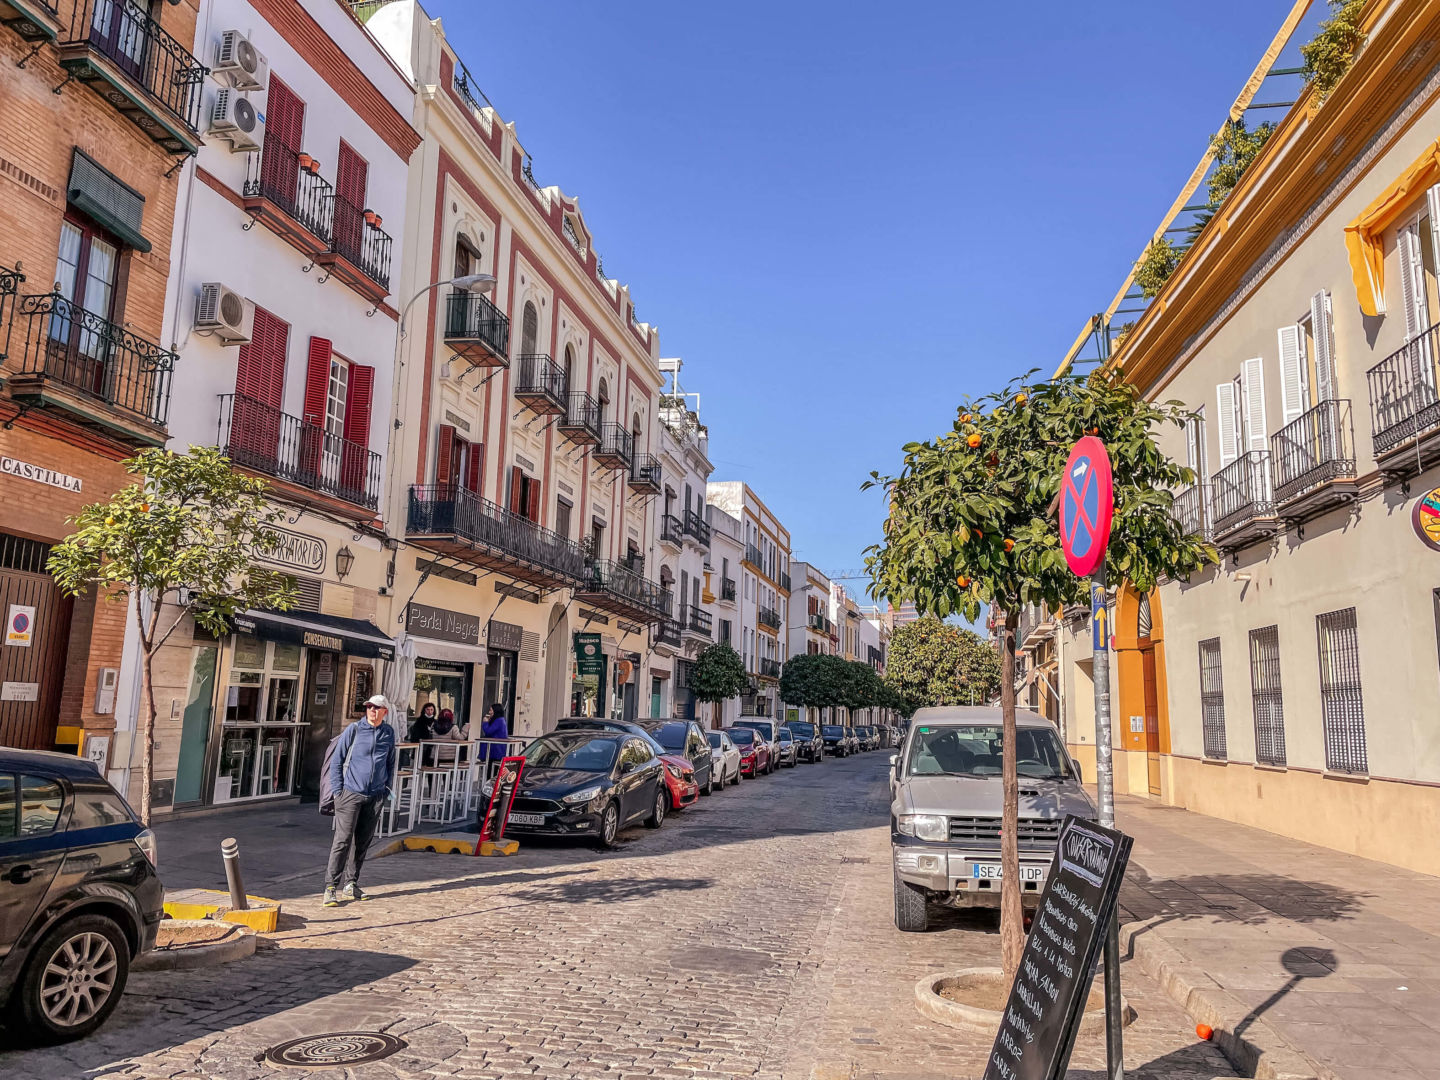 Foto de uns dos bairros de Sevilha, com construções de três andares coloridas, com pequenas sacadas de ferro em todas elas.